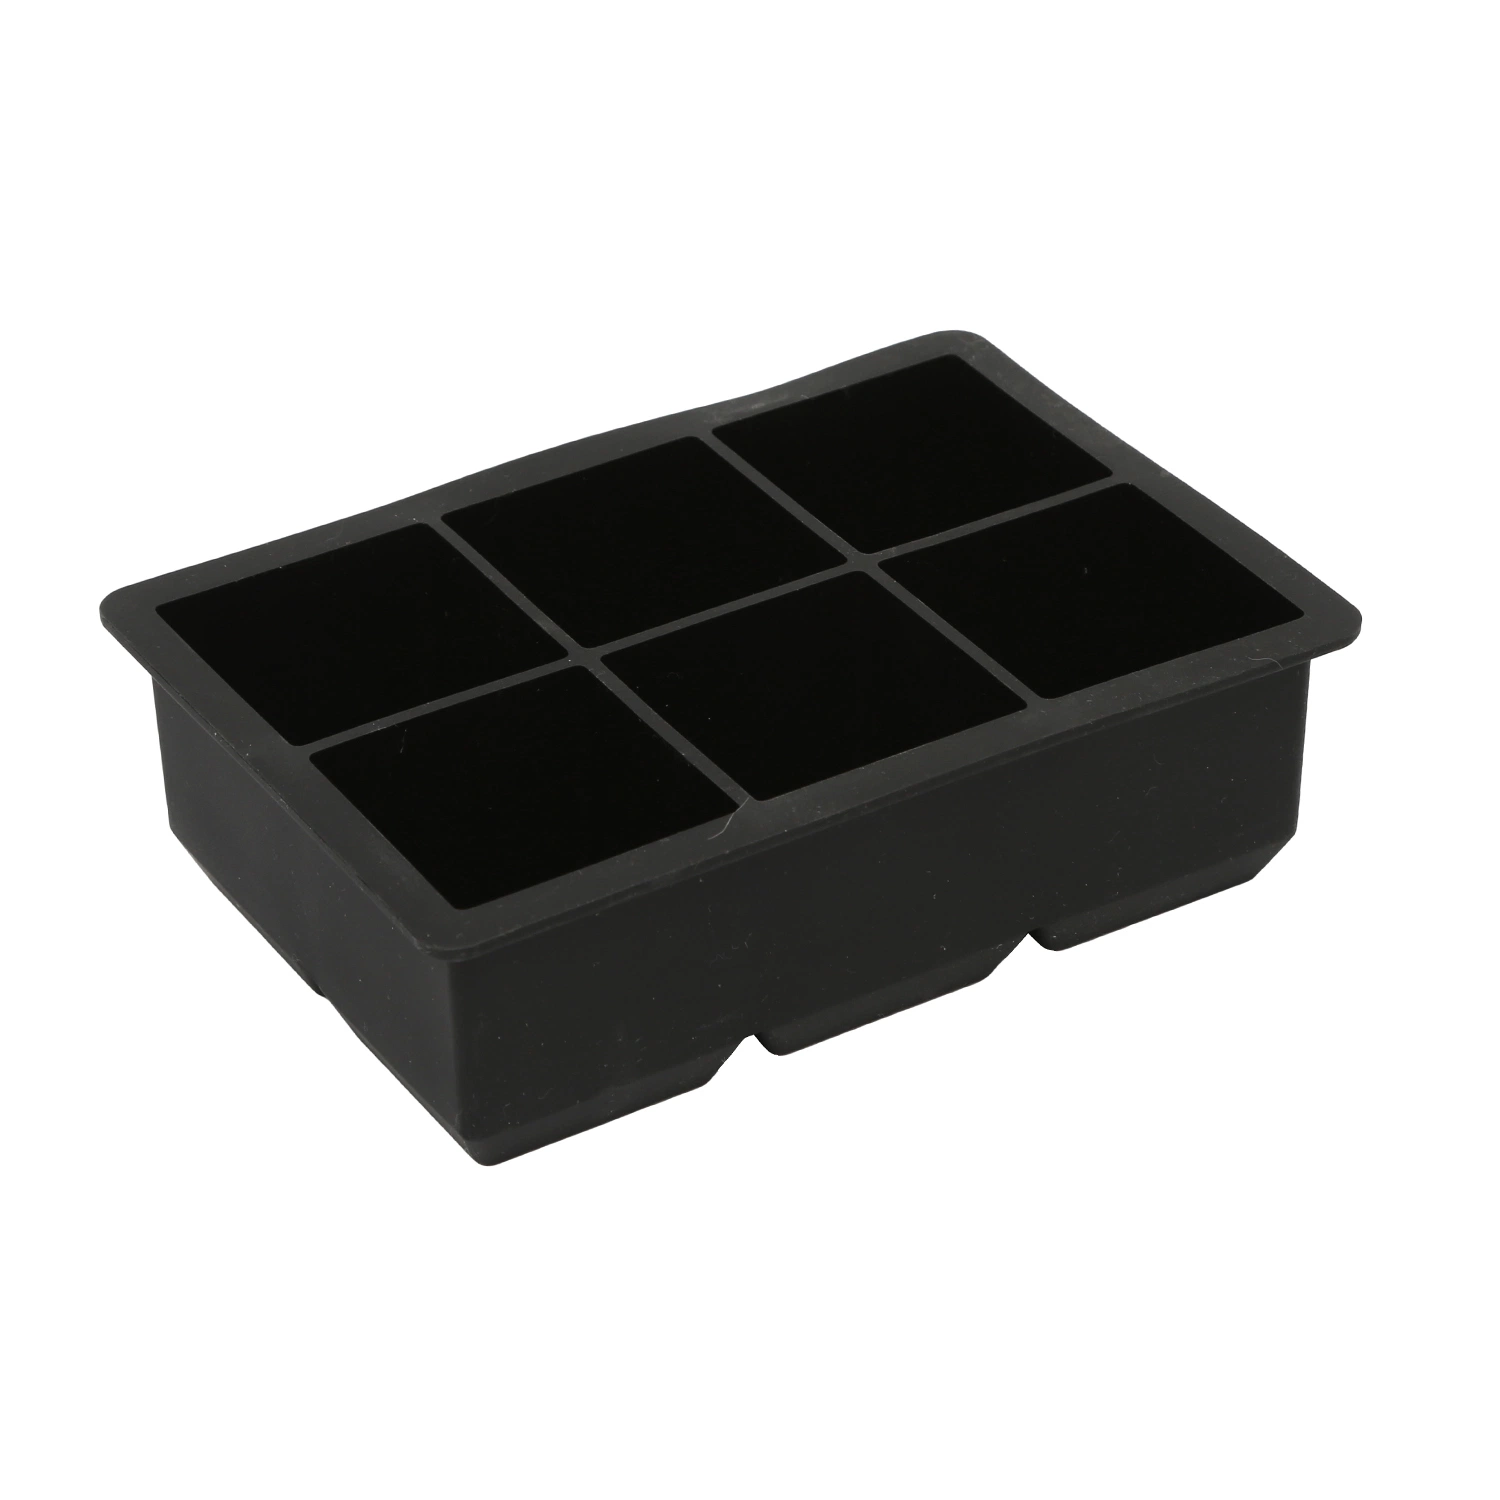 Bac à glaçons en silicone réutilisable de qualité alimentaire avec 6 cubes.